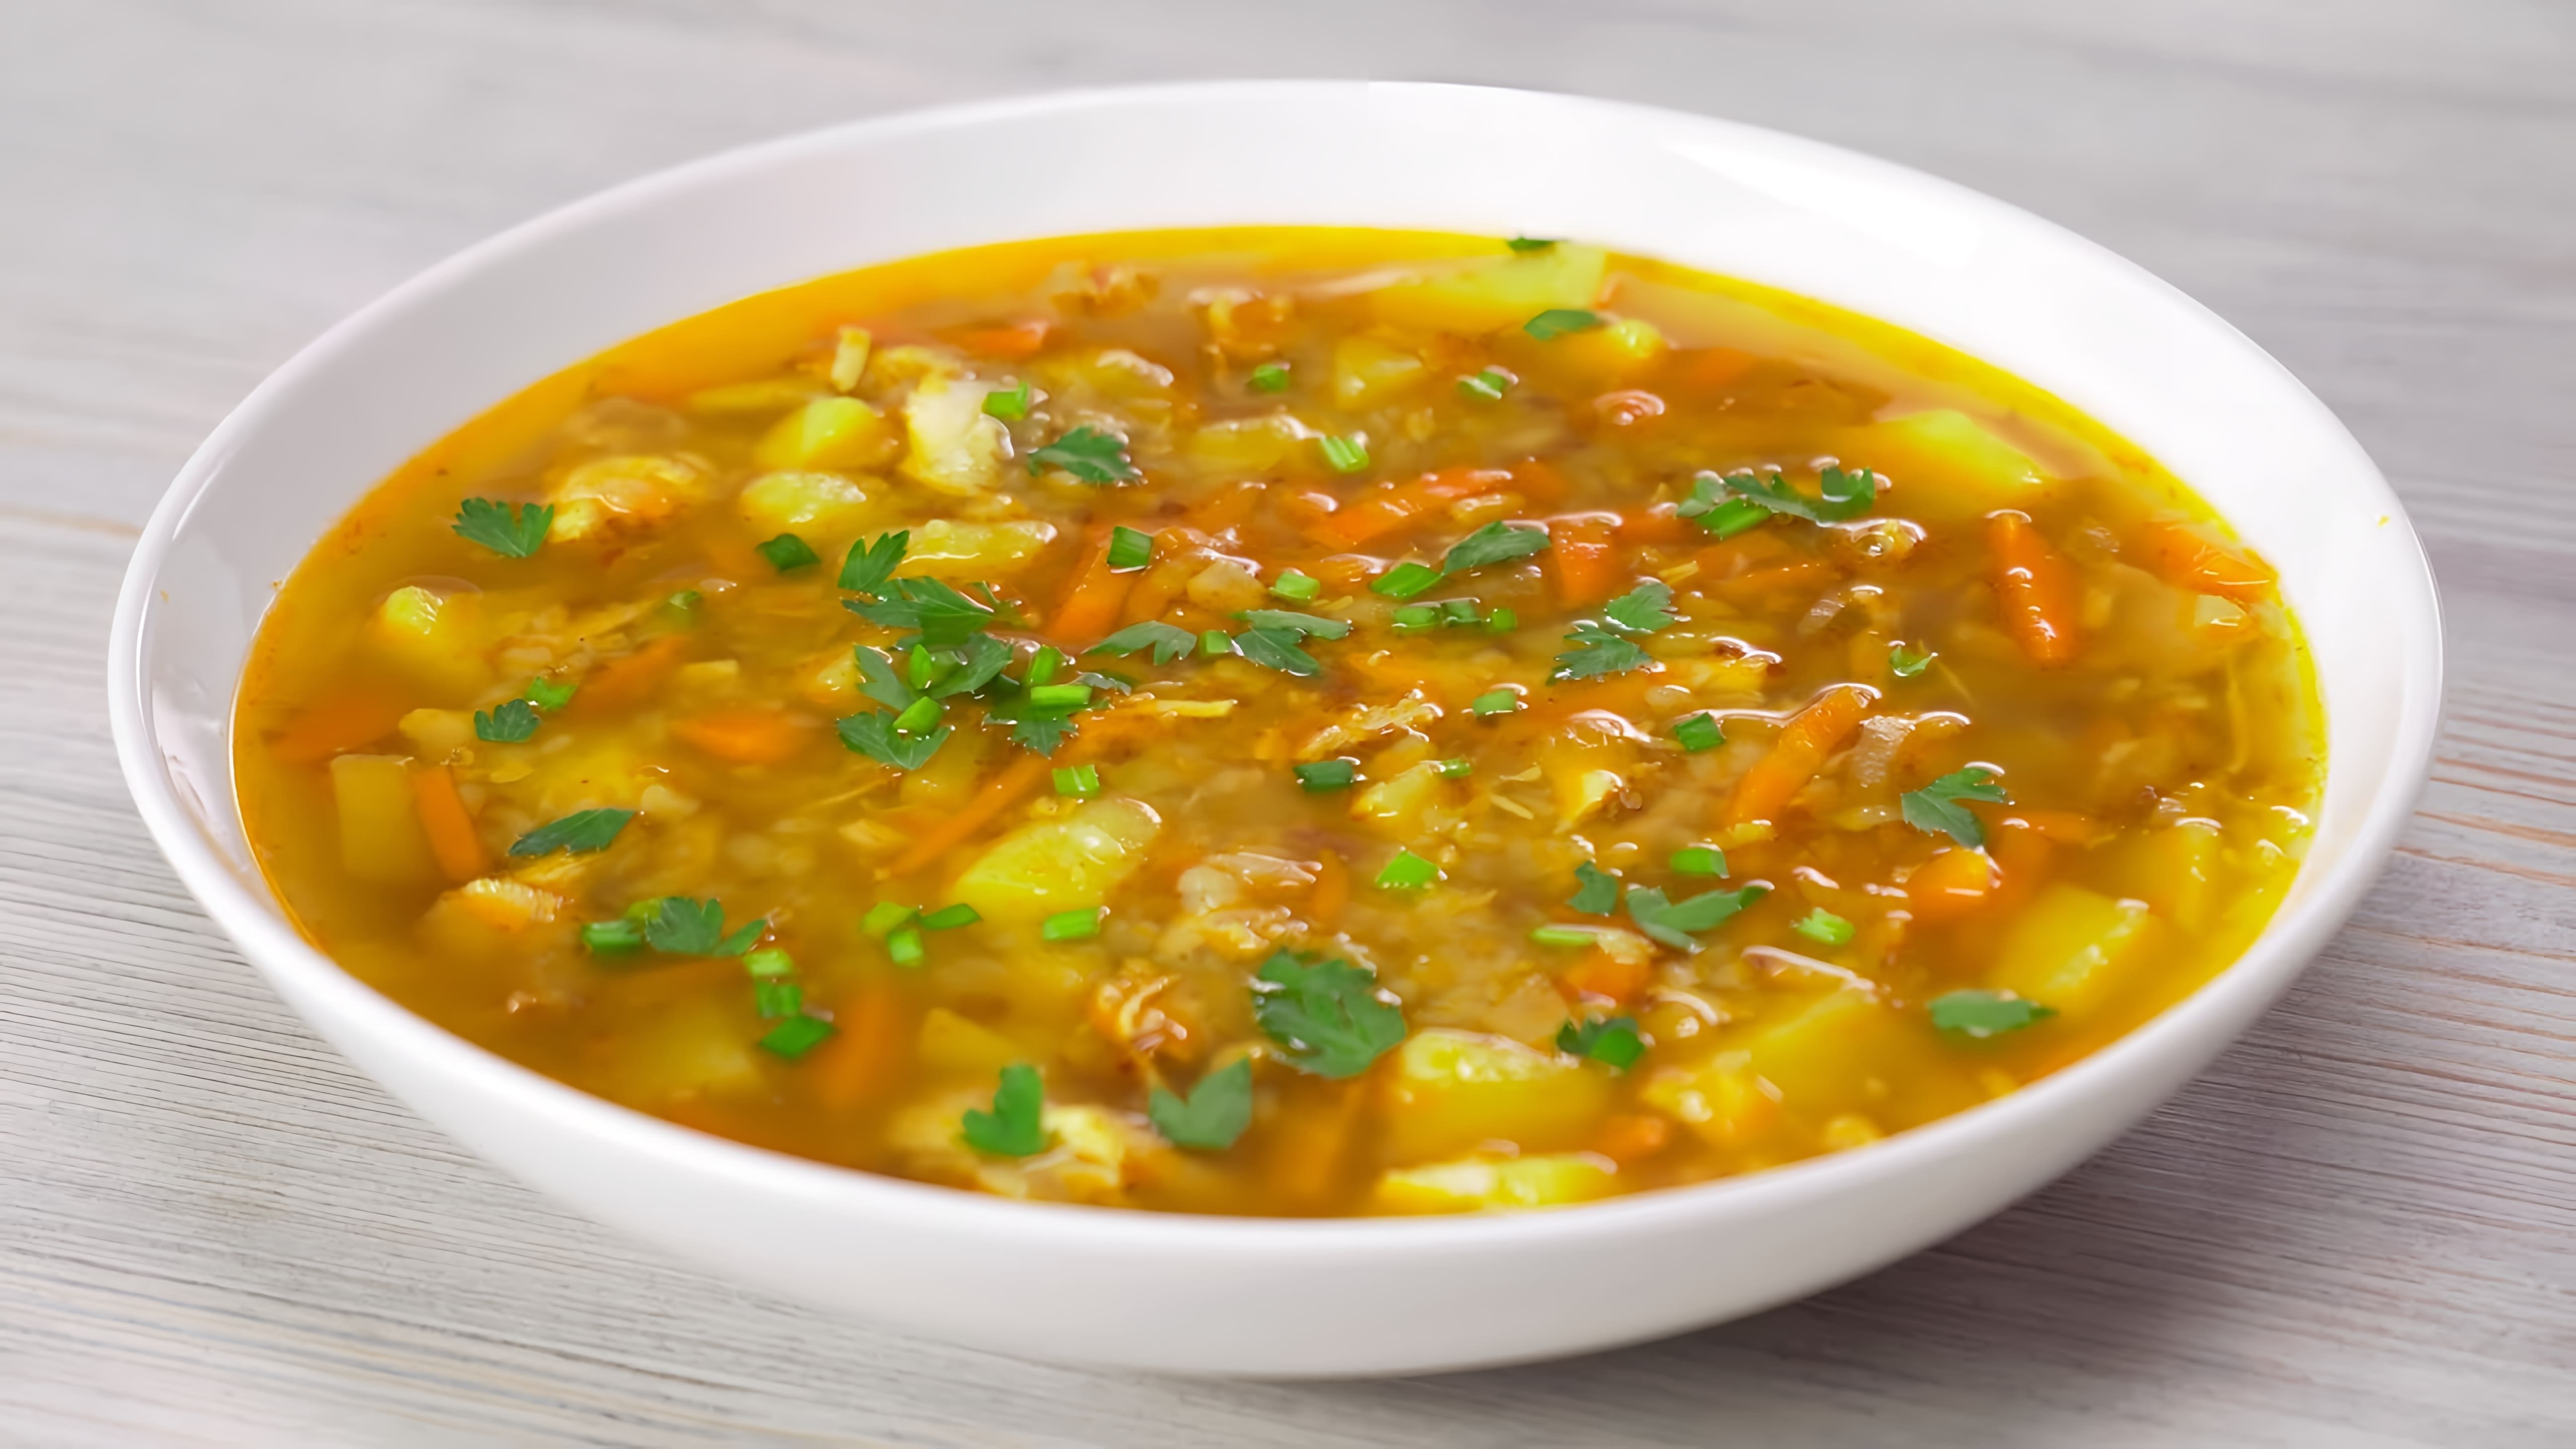 В данном видео демонстрируется рецепт приготовления гречневого супа с курицей